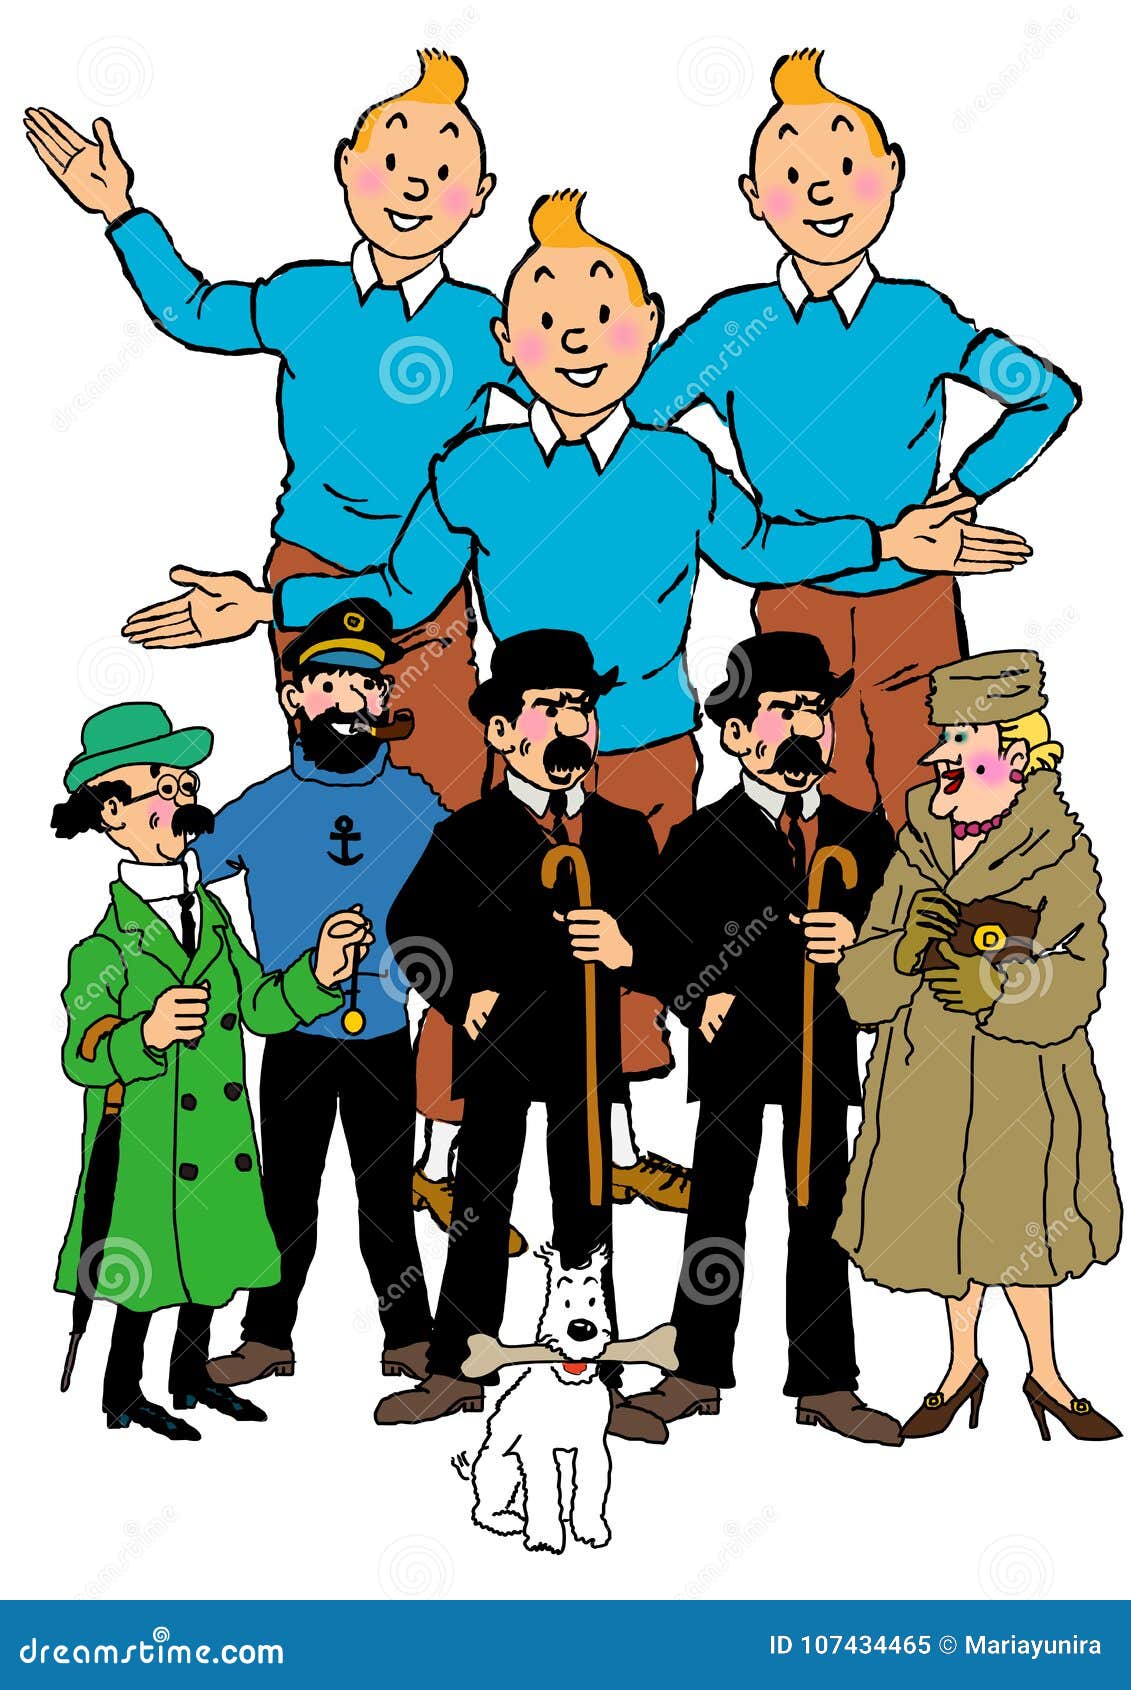 Tintin Cartoon Stock Illustrations – 16 Tintin Cartoon Stock Illustrations,  Vectors & Clipart - Dreamstime